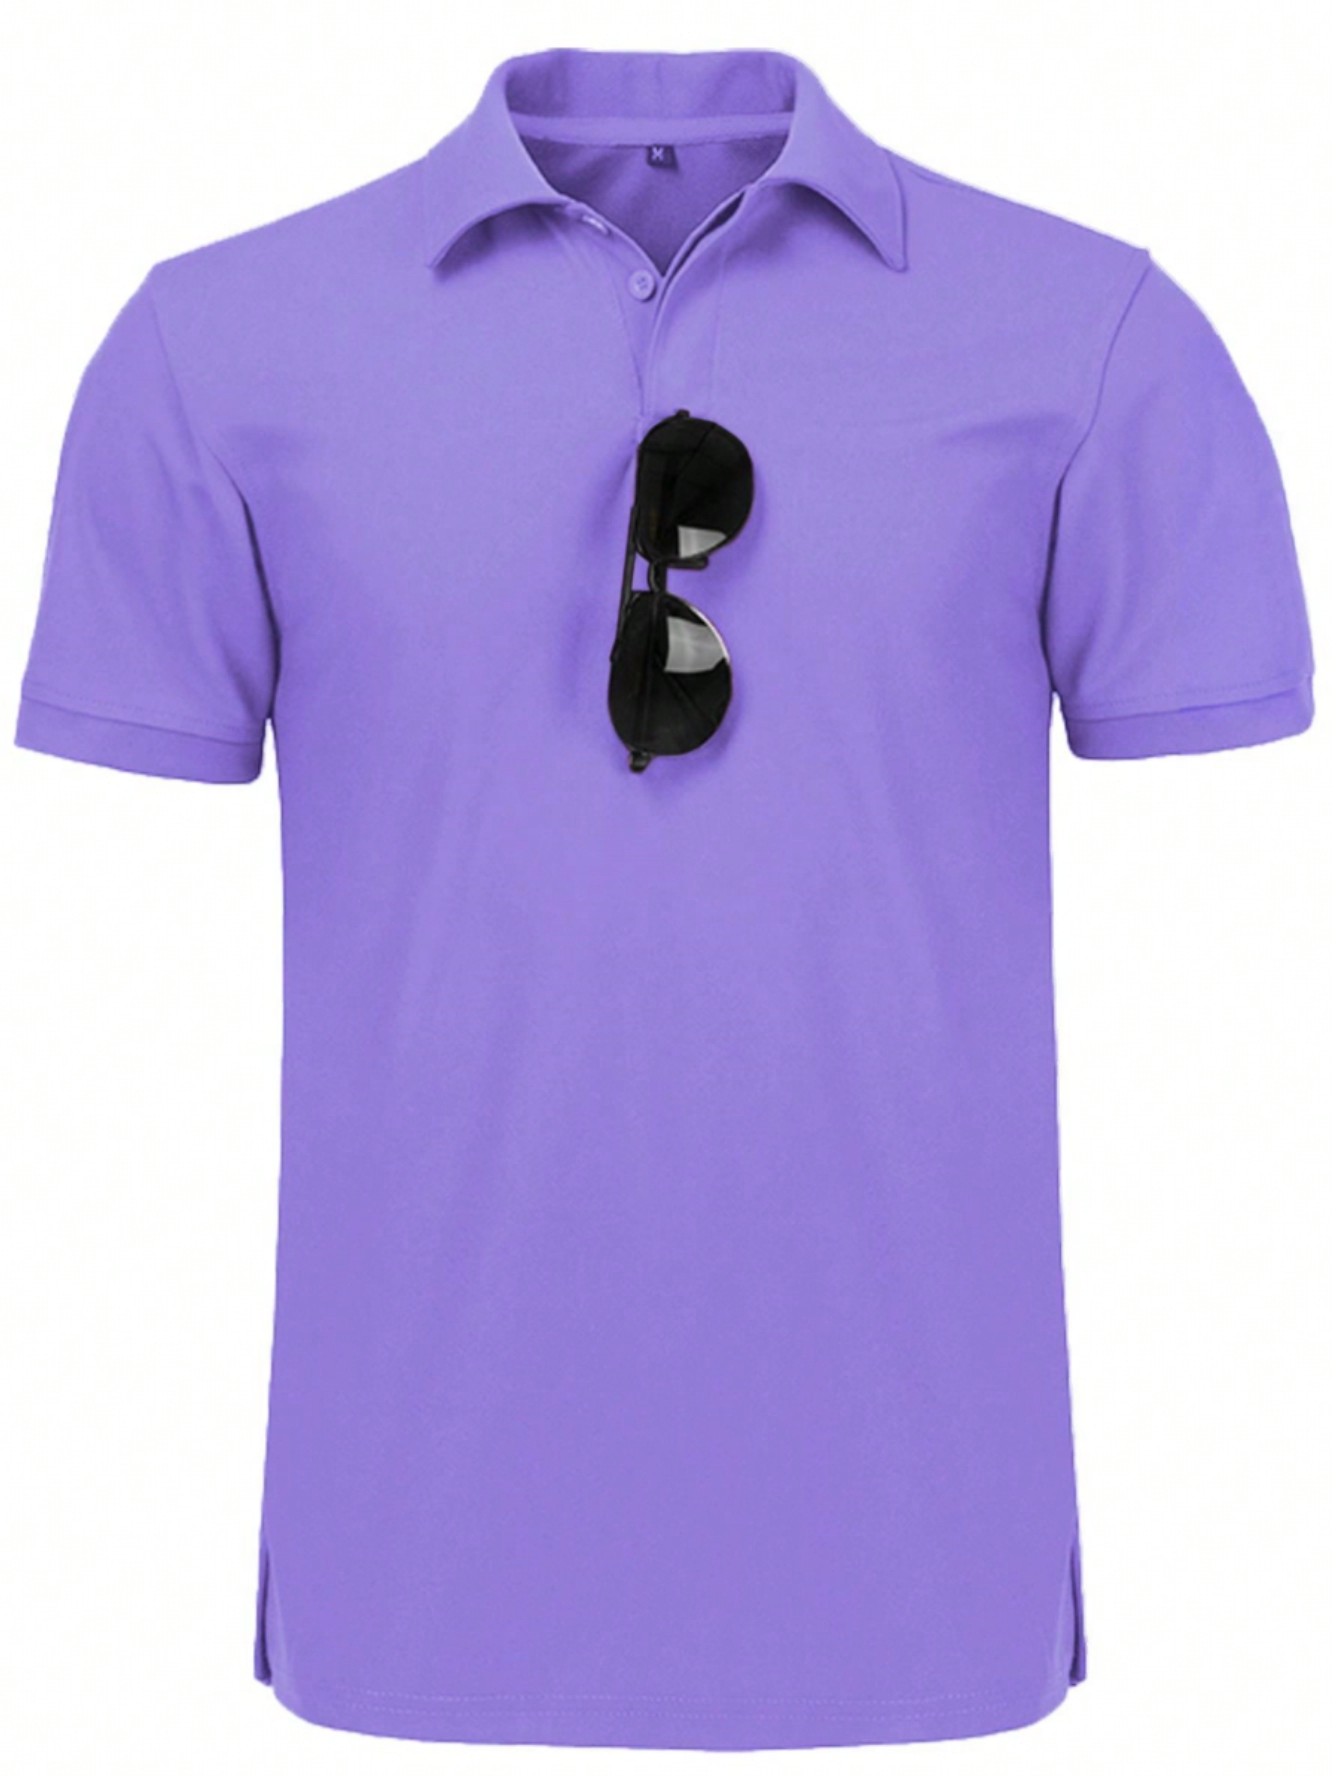 Мужская рубашка поло с коротким рукавом для отдыха, фиолетовый рубашка мужская by f r c рубашка мужская однотонная